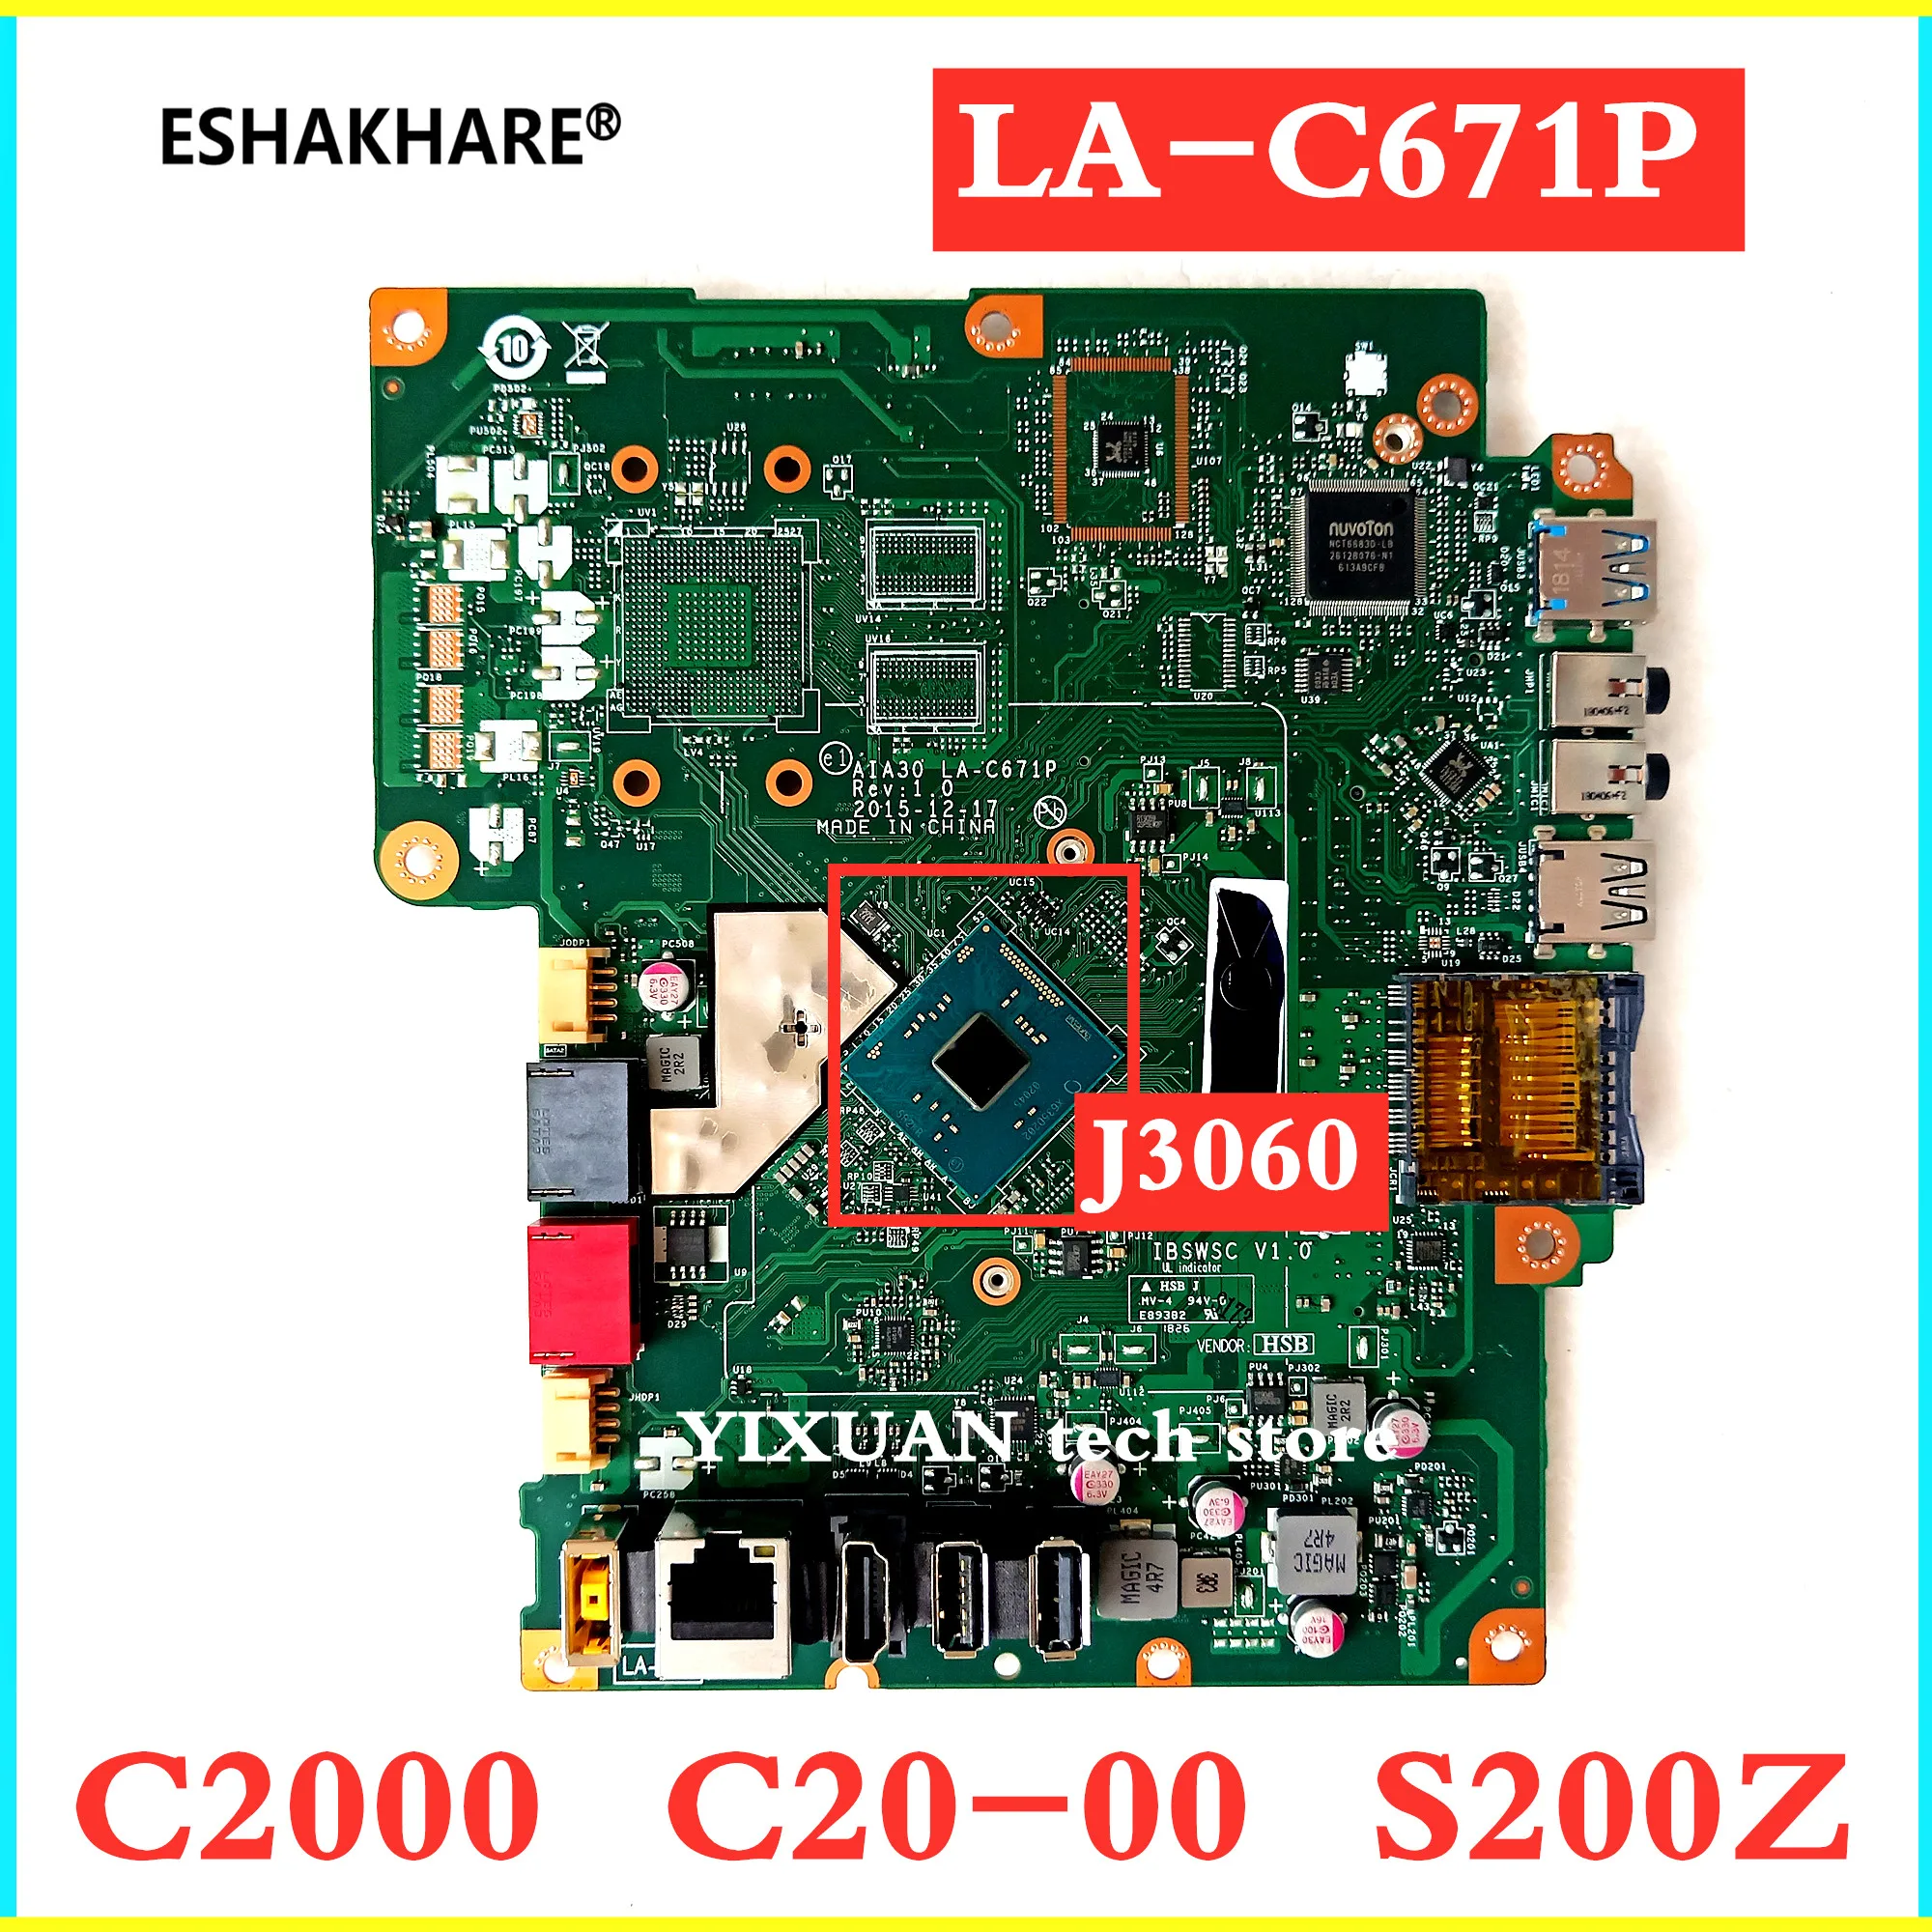 Eshakhare LA-C671P системная плата подходит для lenovo S200Z C2000 материнская плата AIO J3060 AIA30 IBSWSC V1.0 00UW333 полностью протестировано работы